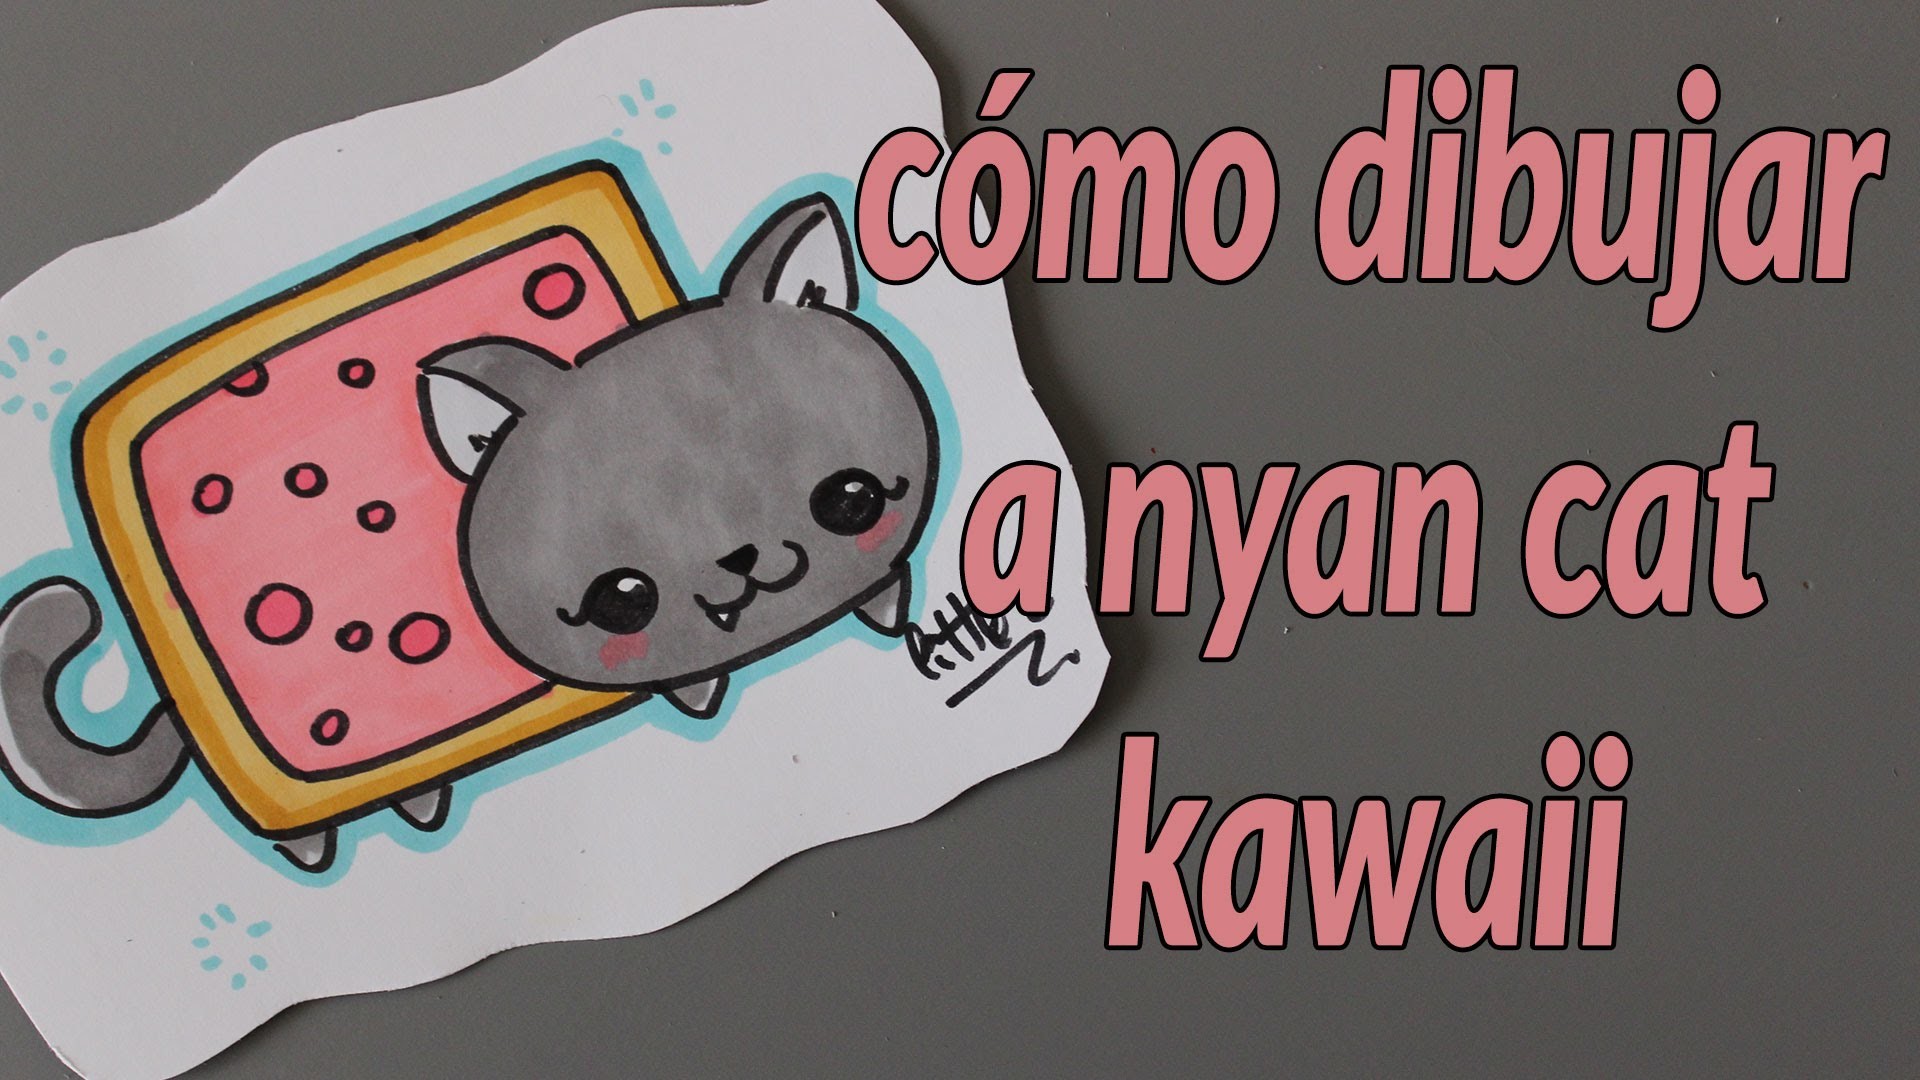 Cómo dibujar a nyan cat kawaii